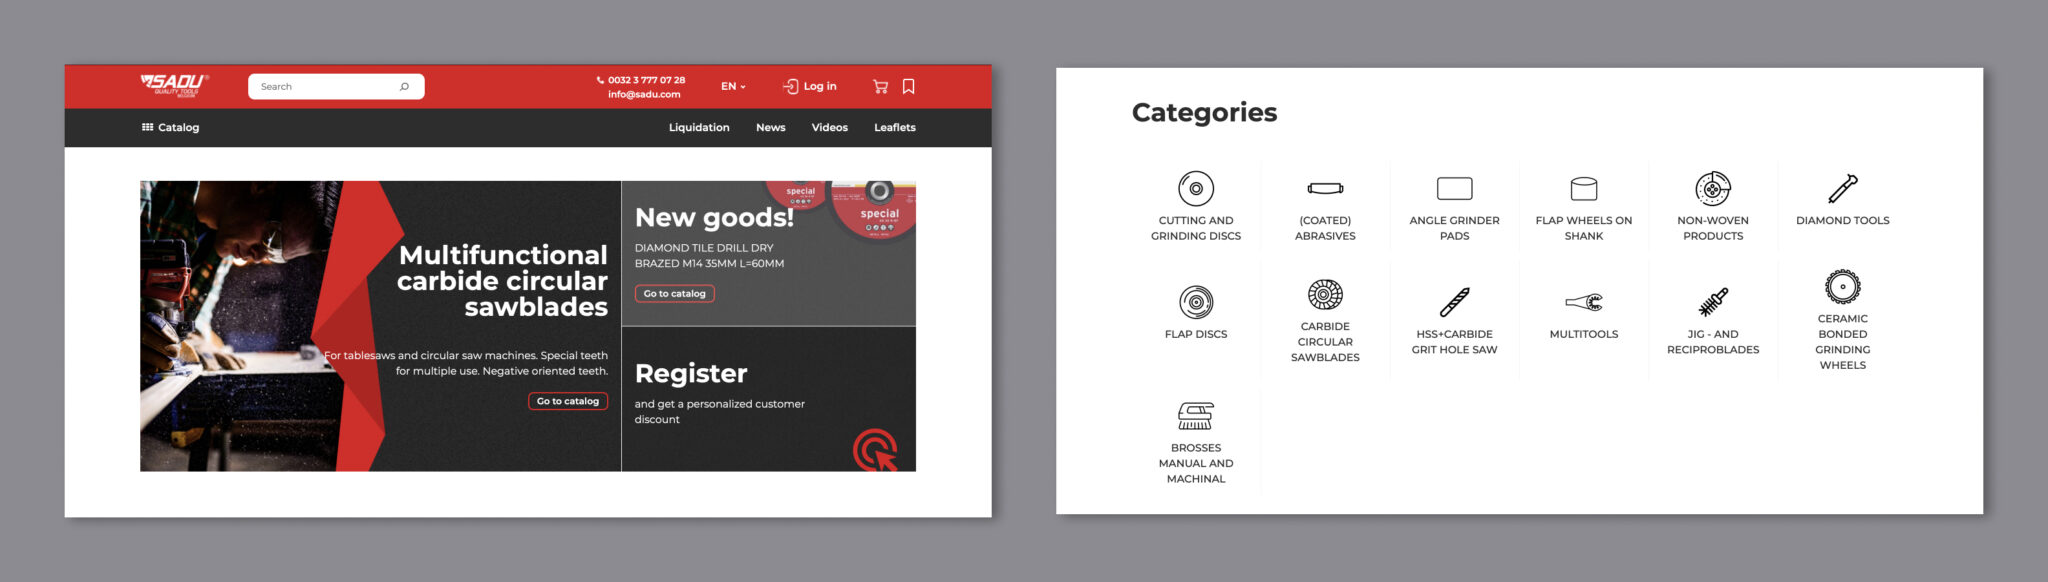 Web Design for Sadu product categories